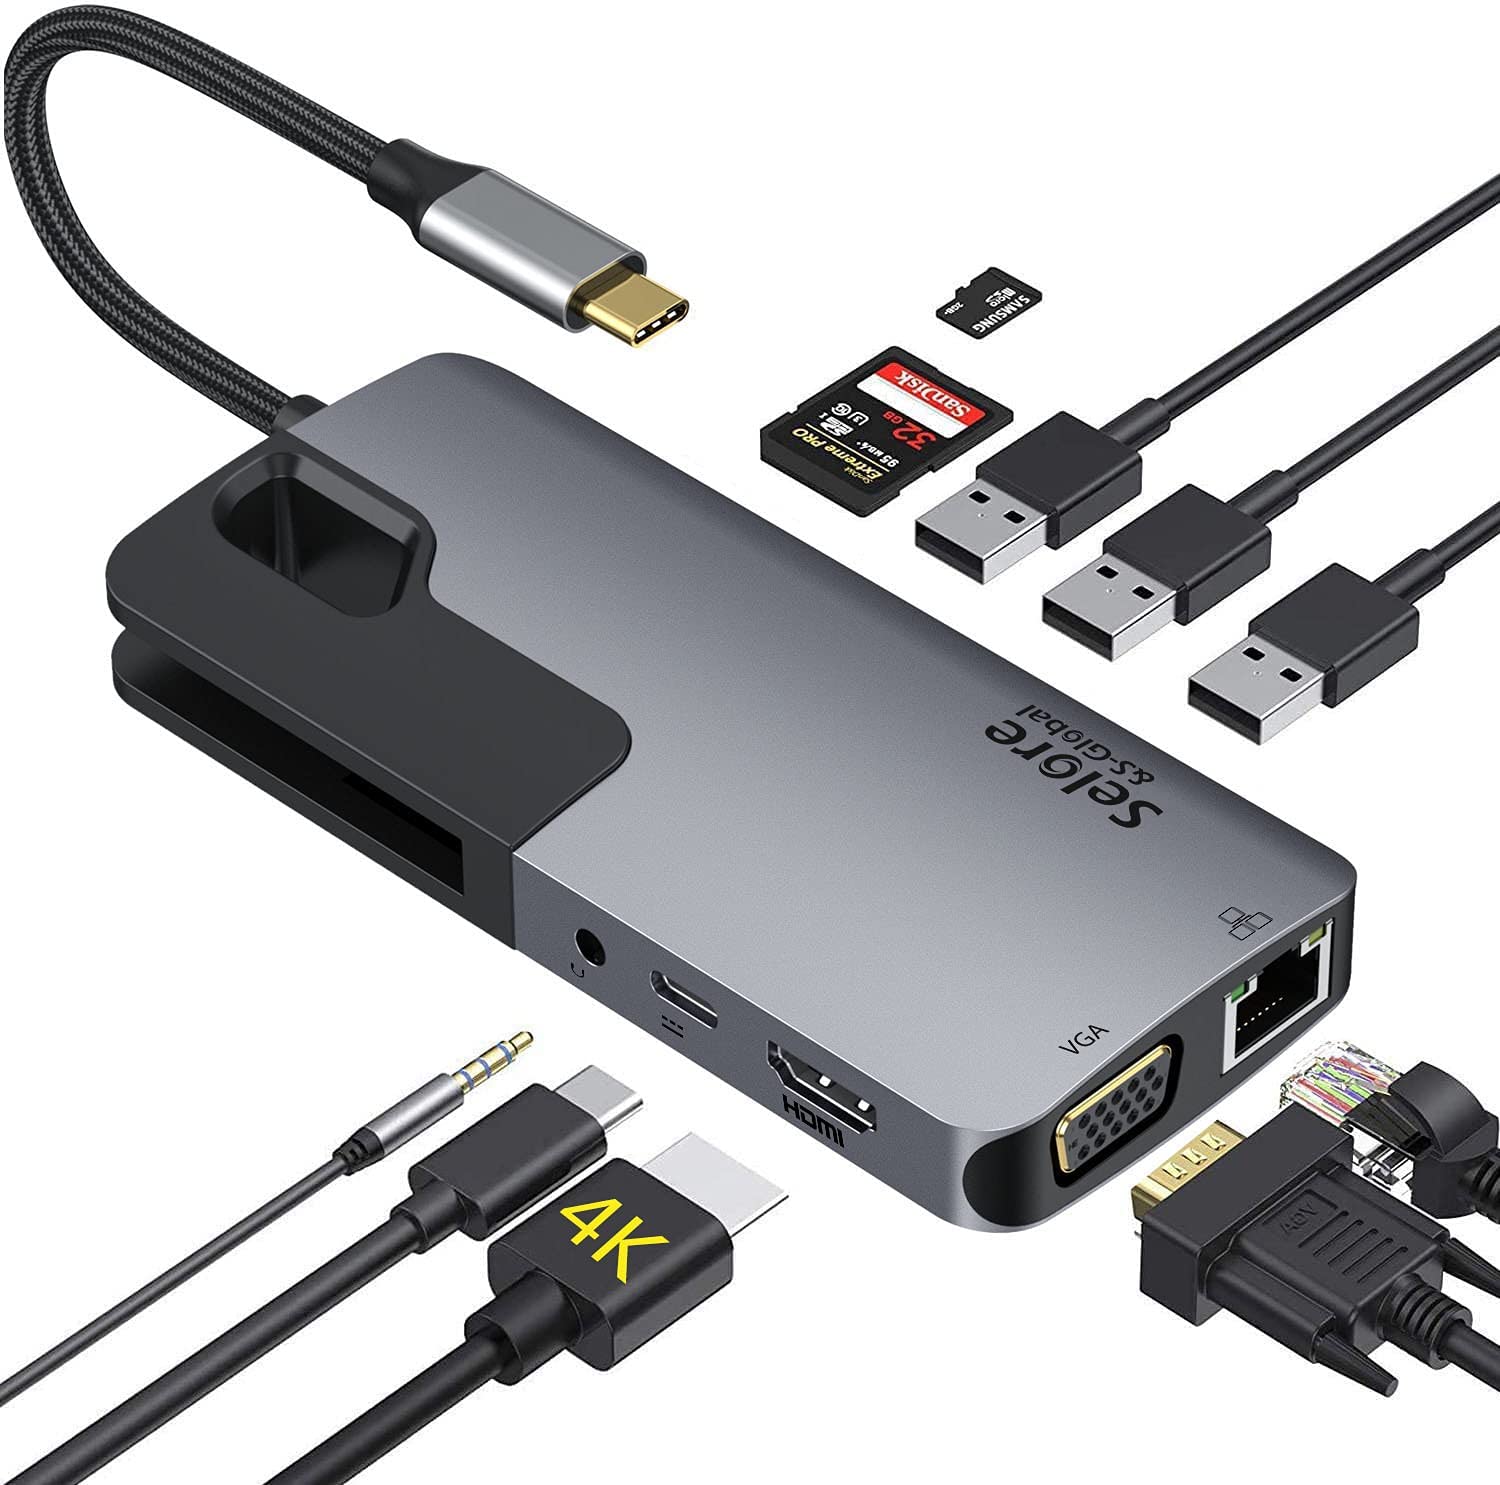 USB ハブ ドッキングステーション 10-in1 多機能 USB3.0ポート パンダスタジオ・レンタル公式サイト